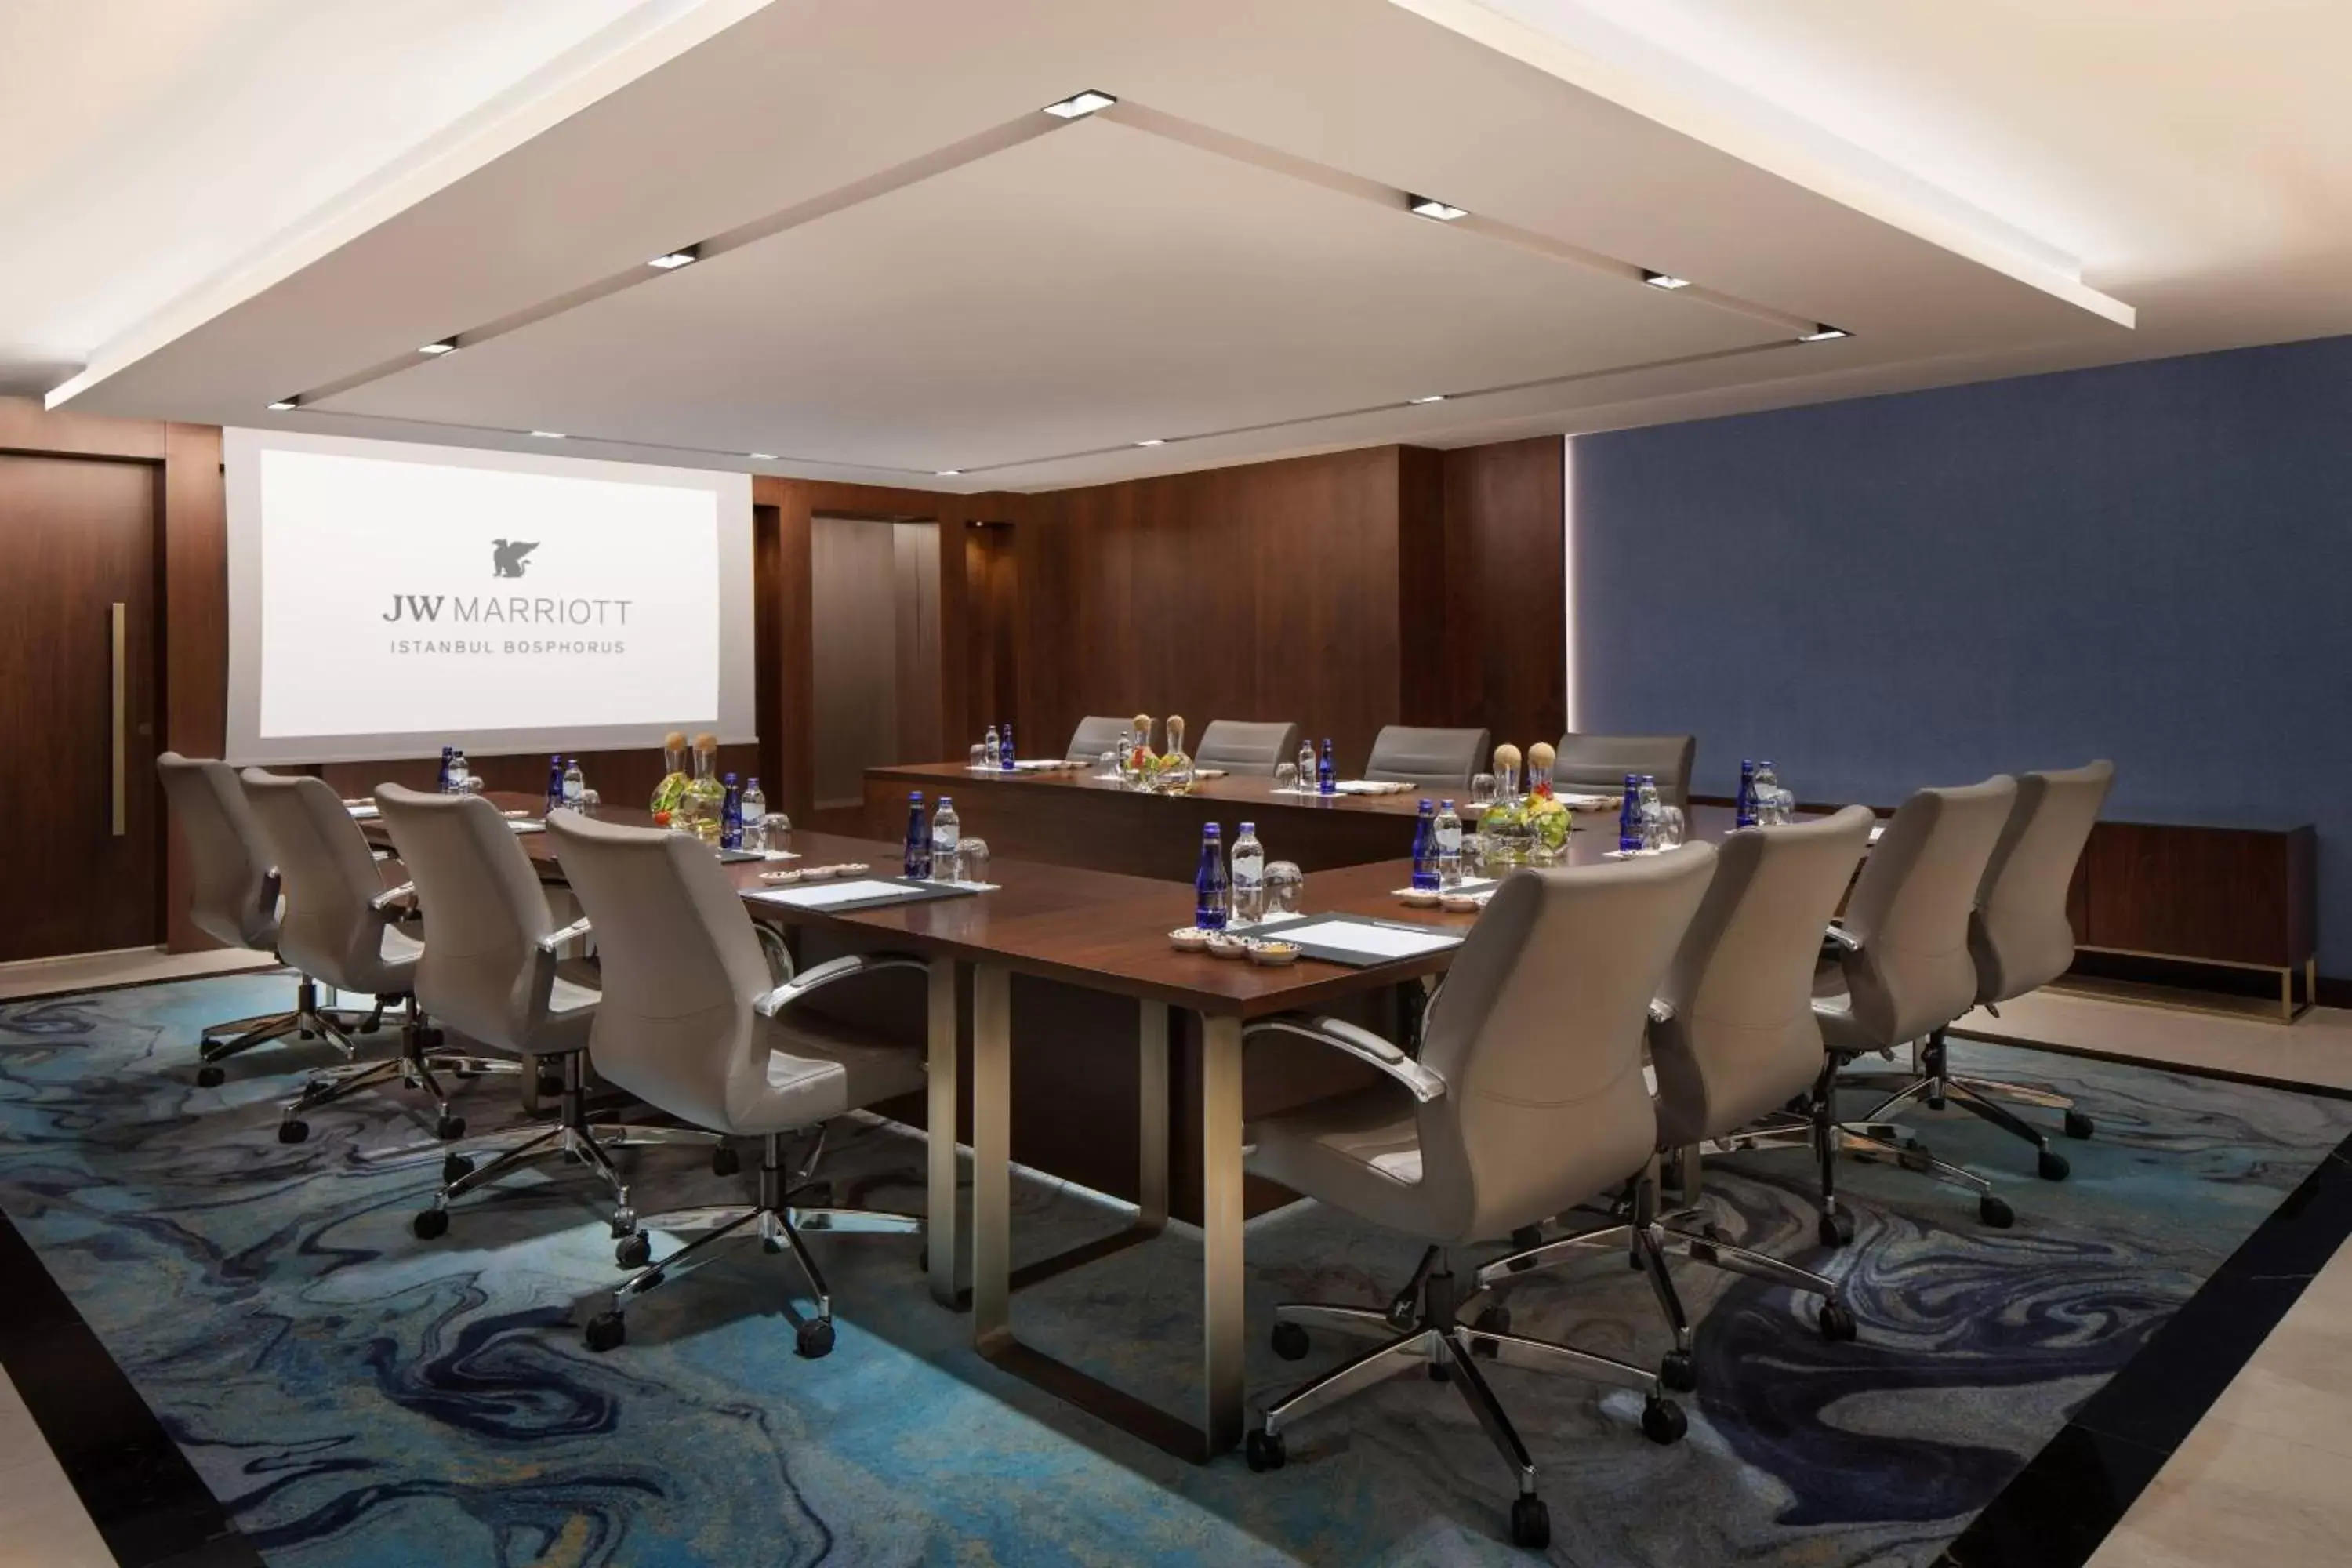 Meeting/conference room in JW Marriott Istanbul Bosphorus